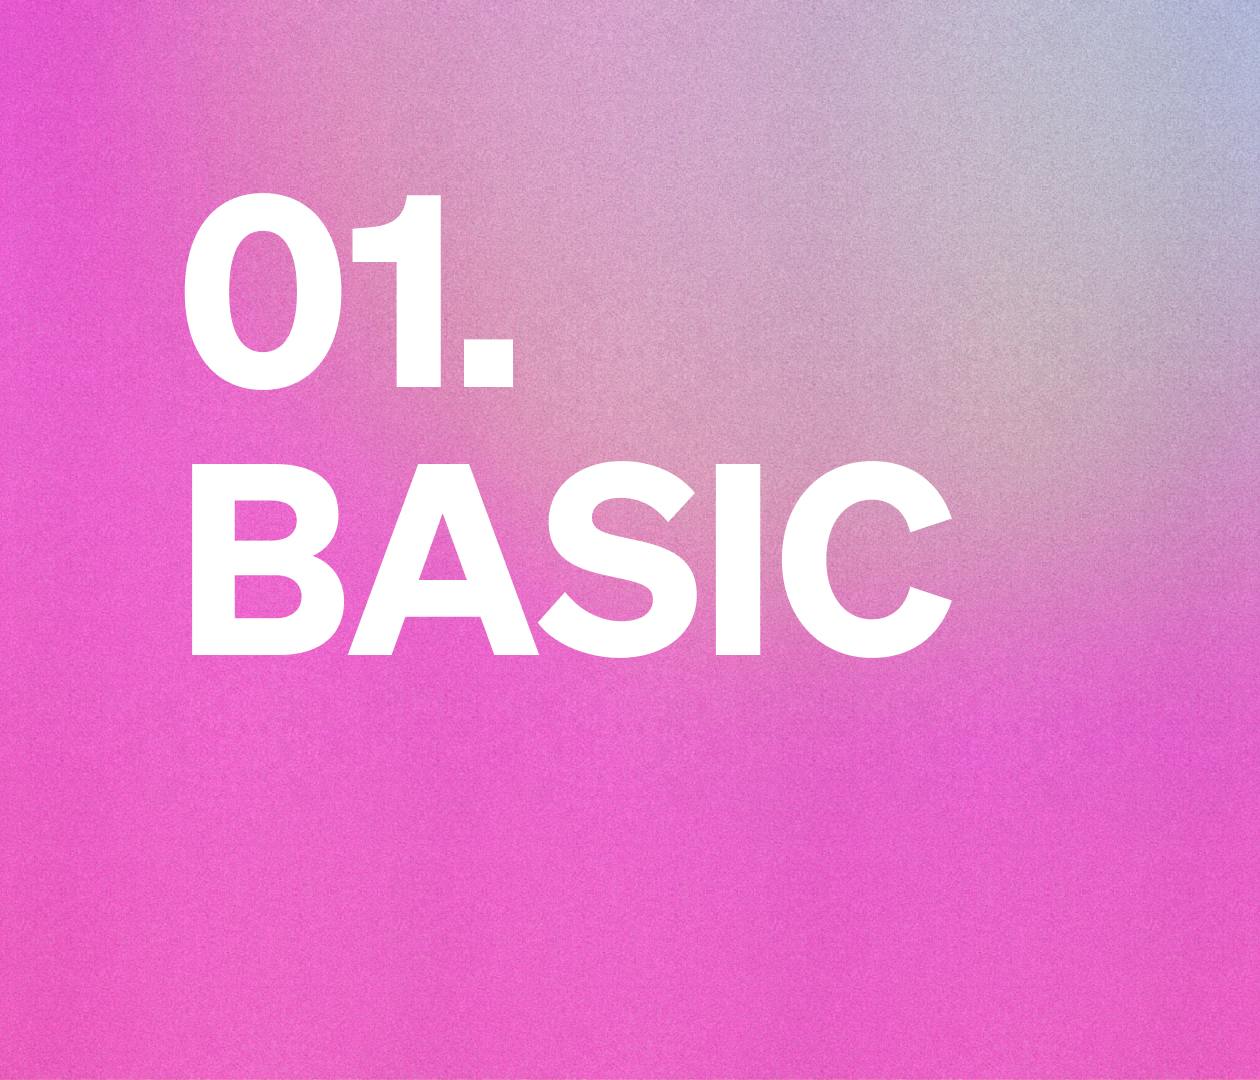 01.  Basic